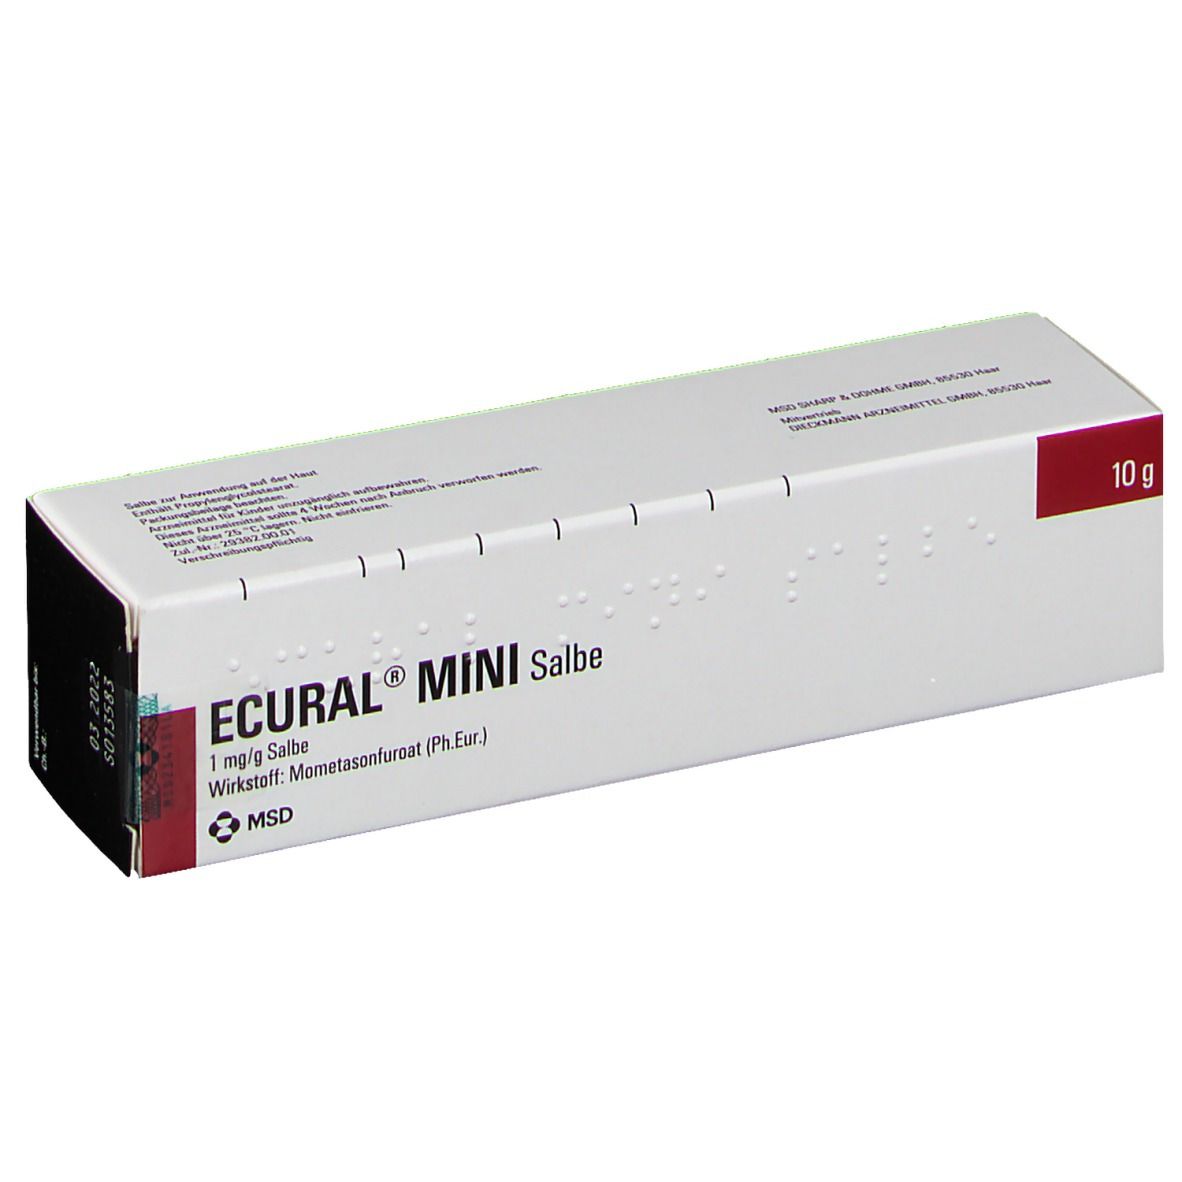 ECURAL® MINI Salbe 1 mg/ml